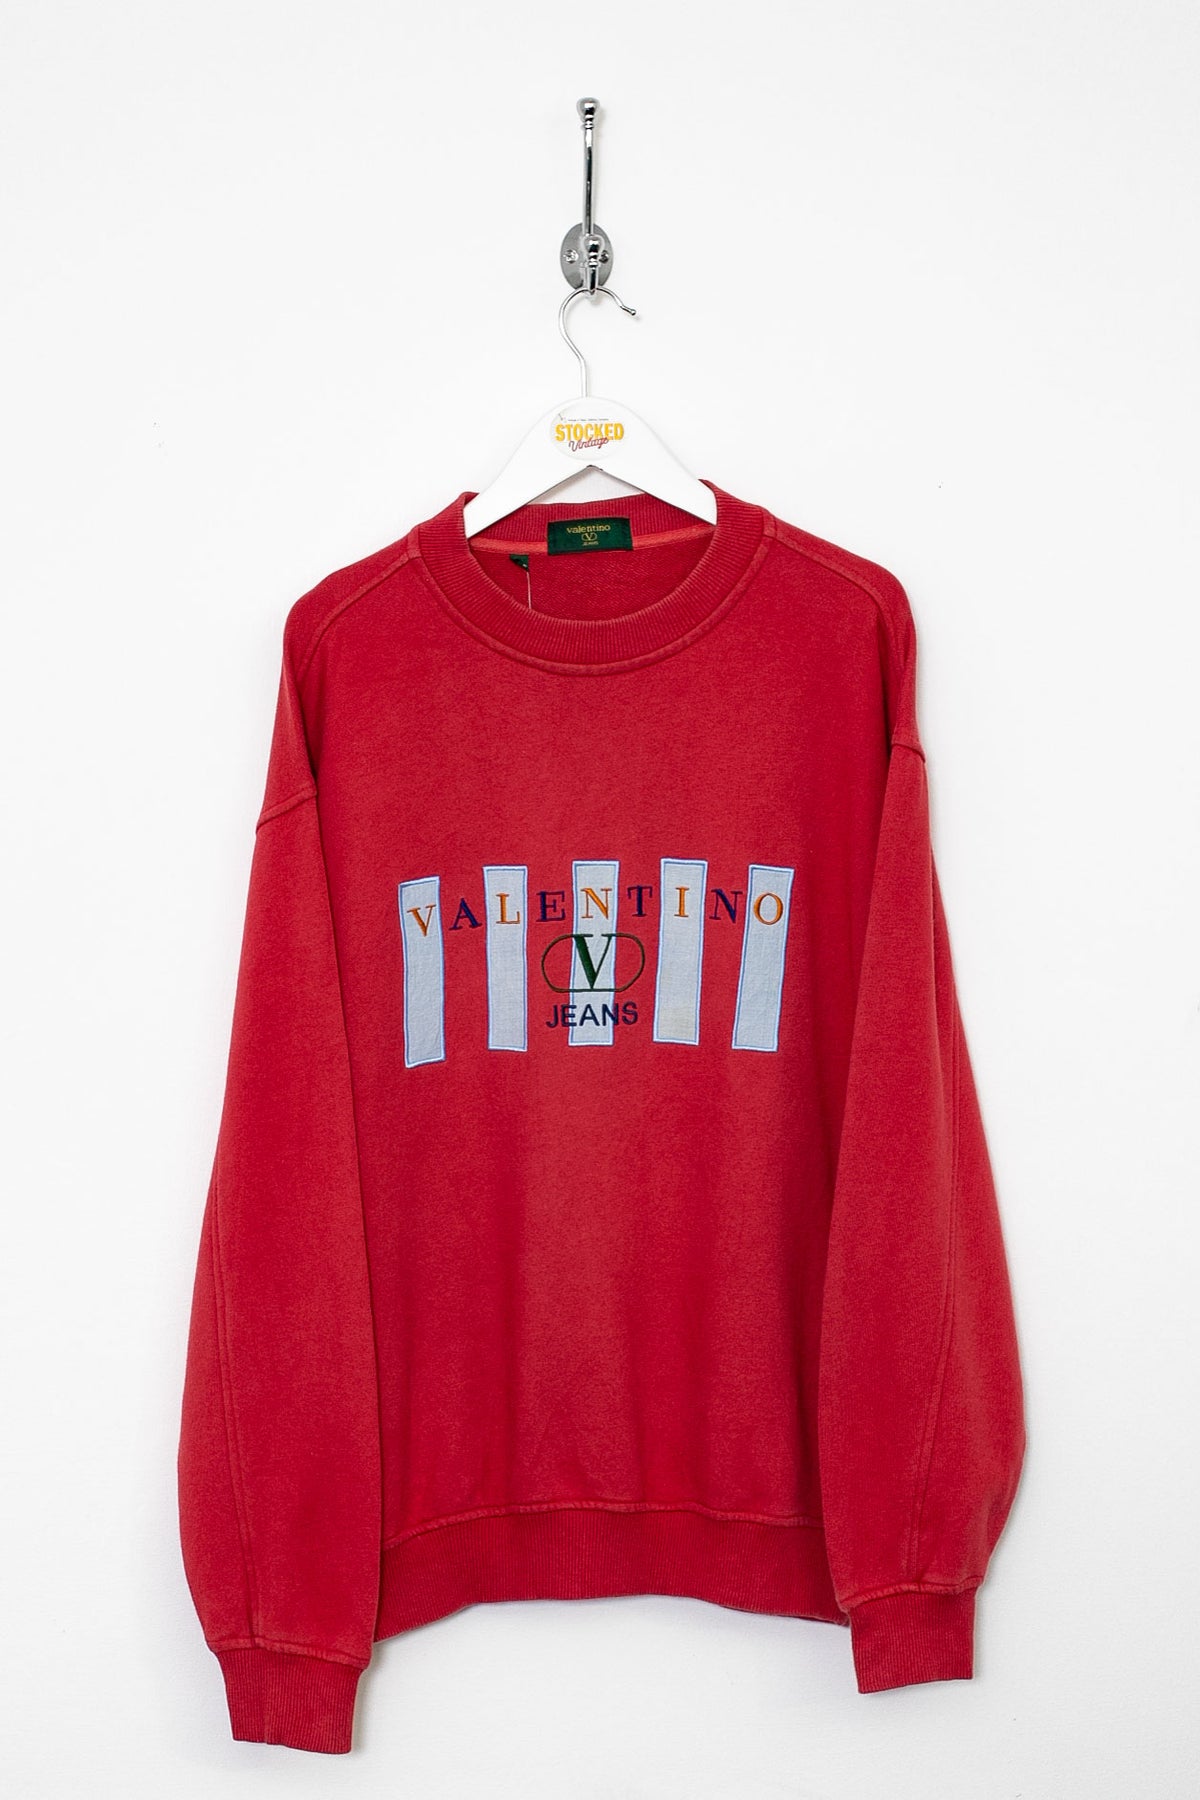 90s Valentino Sweatshirt (M)